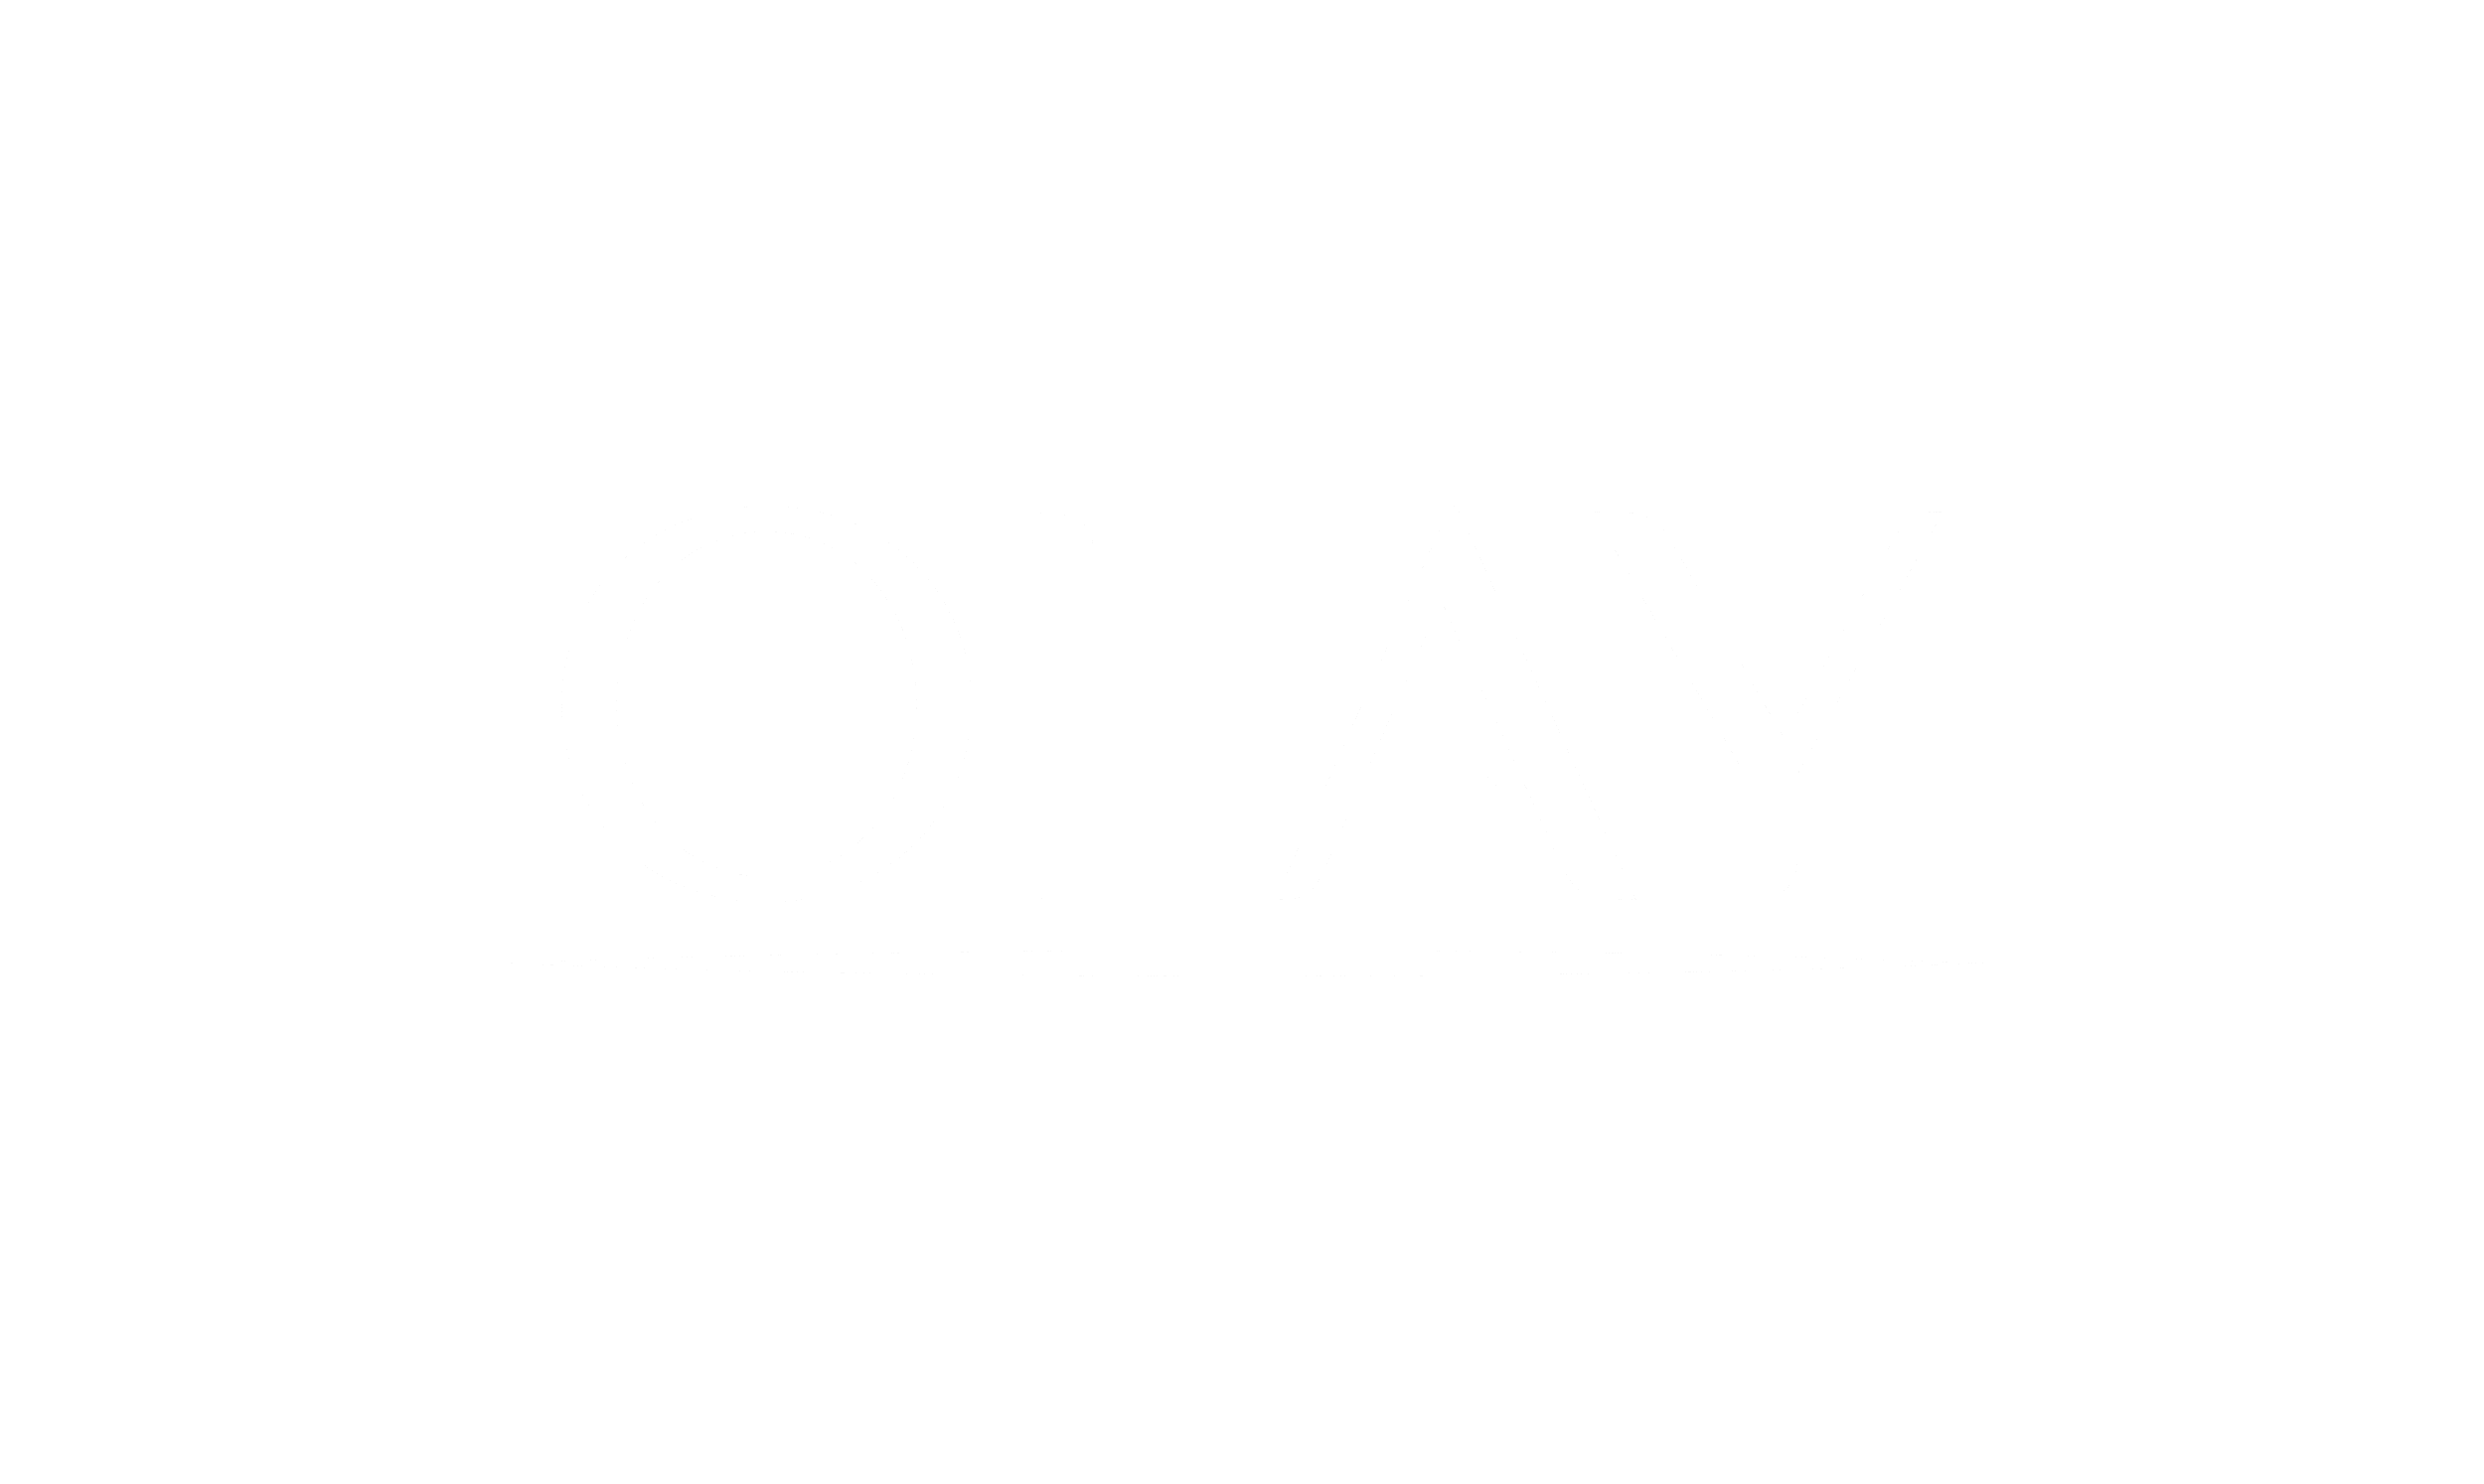 Olay_Client_Logos